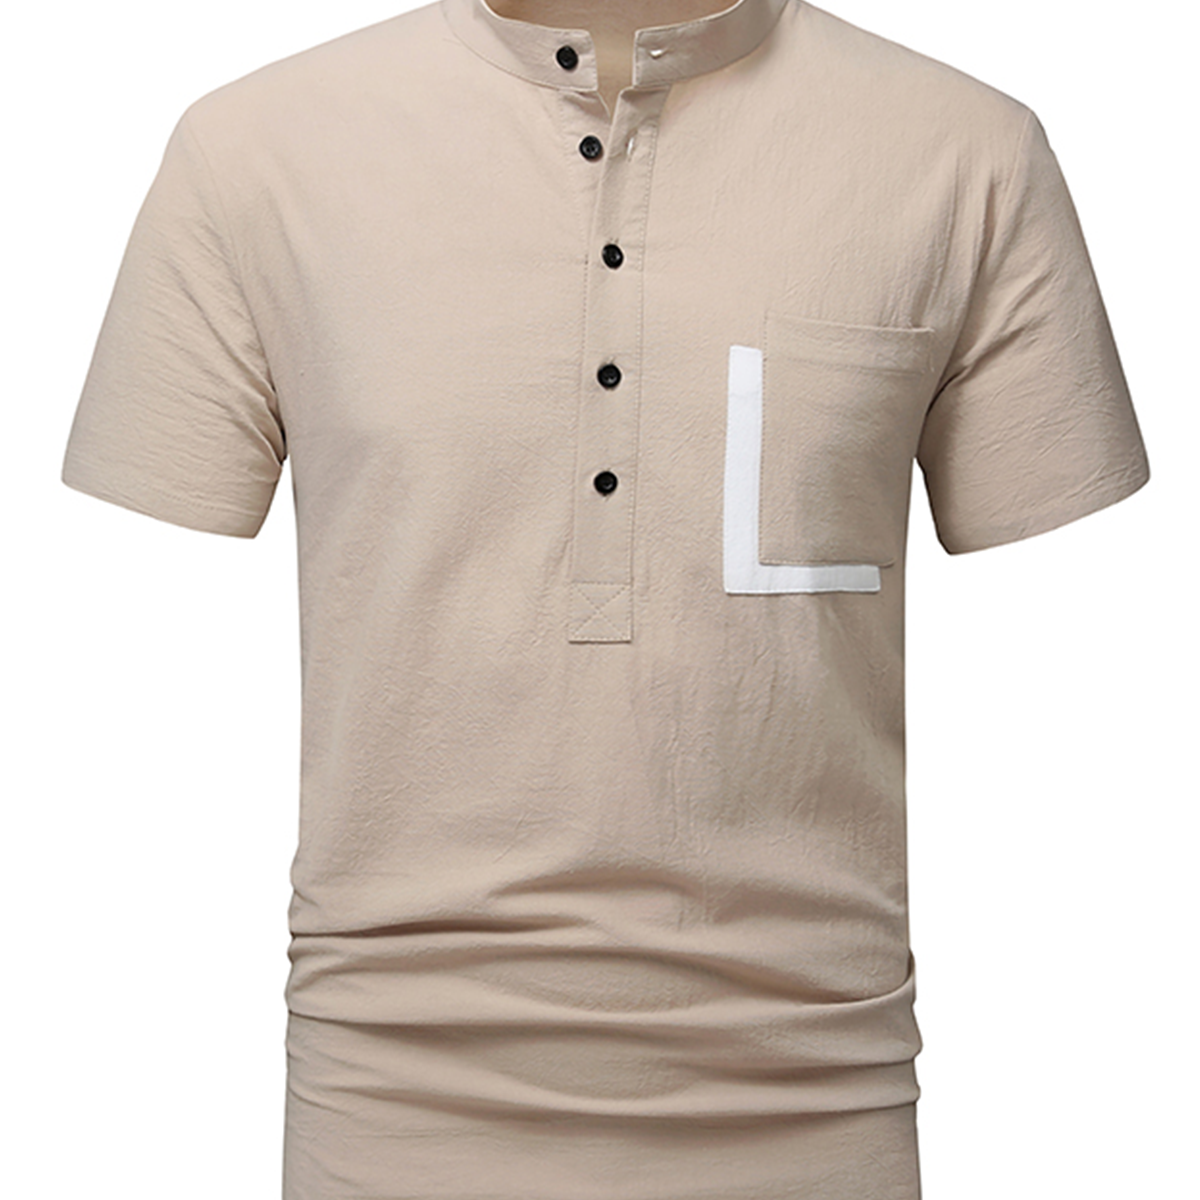 Men's Cotton Casual Pocket Beach Summer Short Sleeve Button Shirt